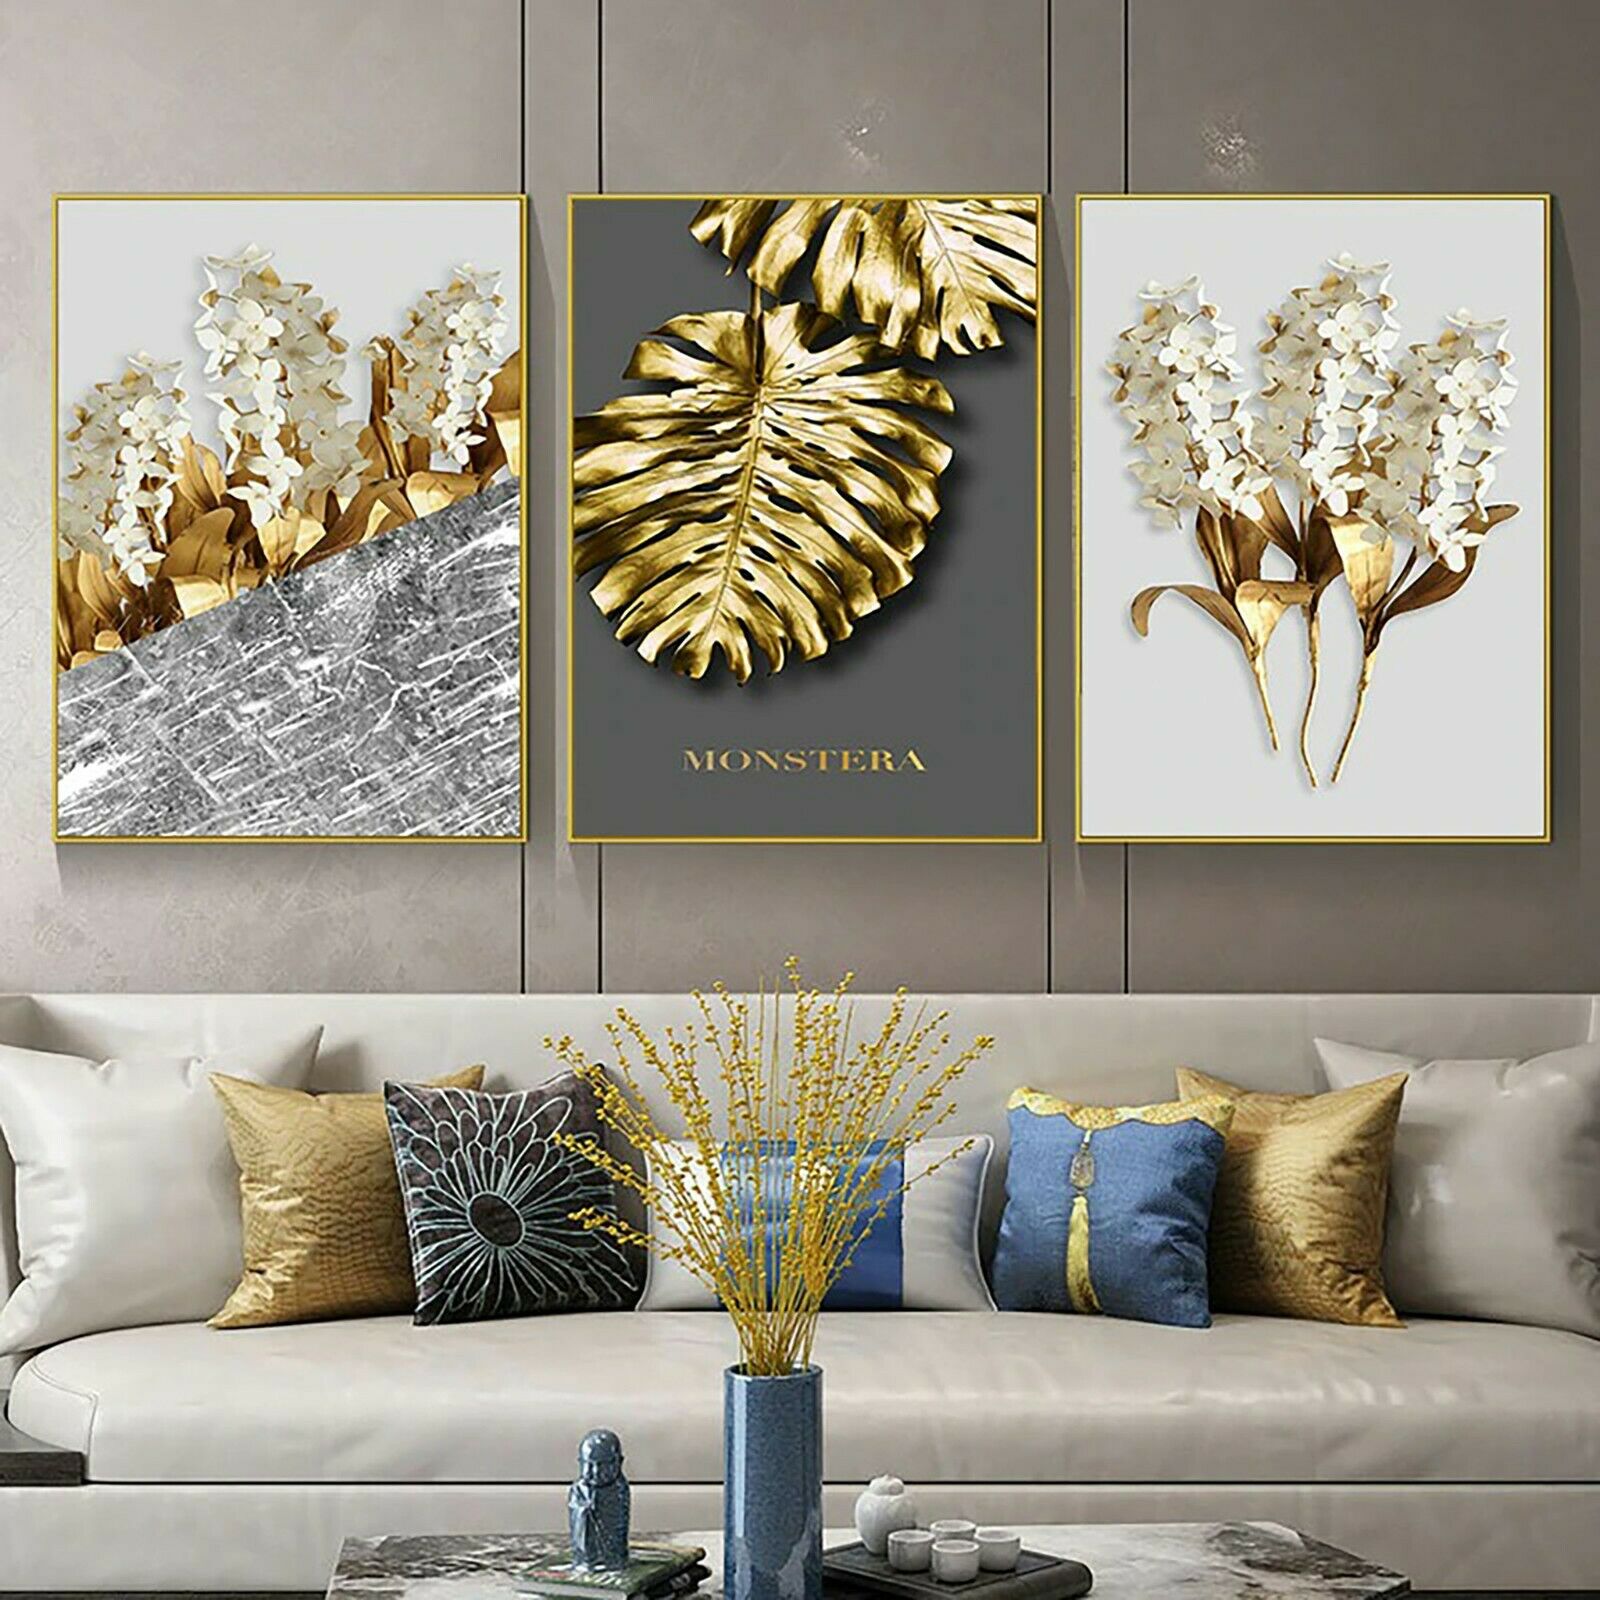 Miroirs et autres décorations murales utilisant la couleur or